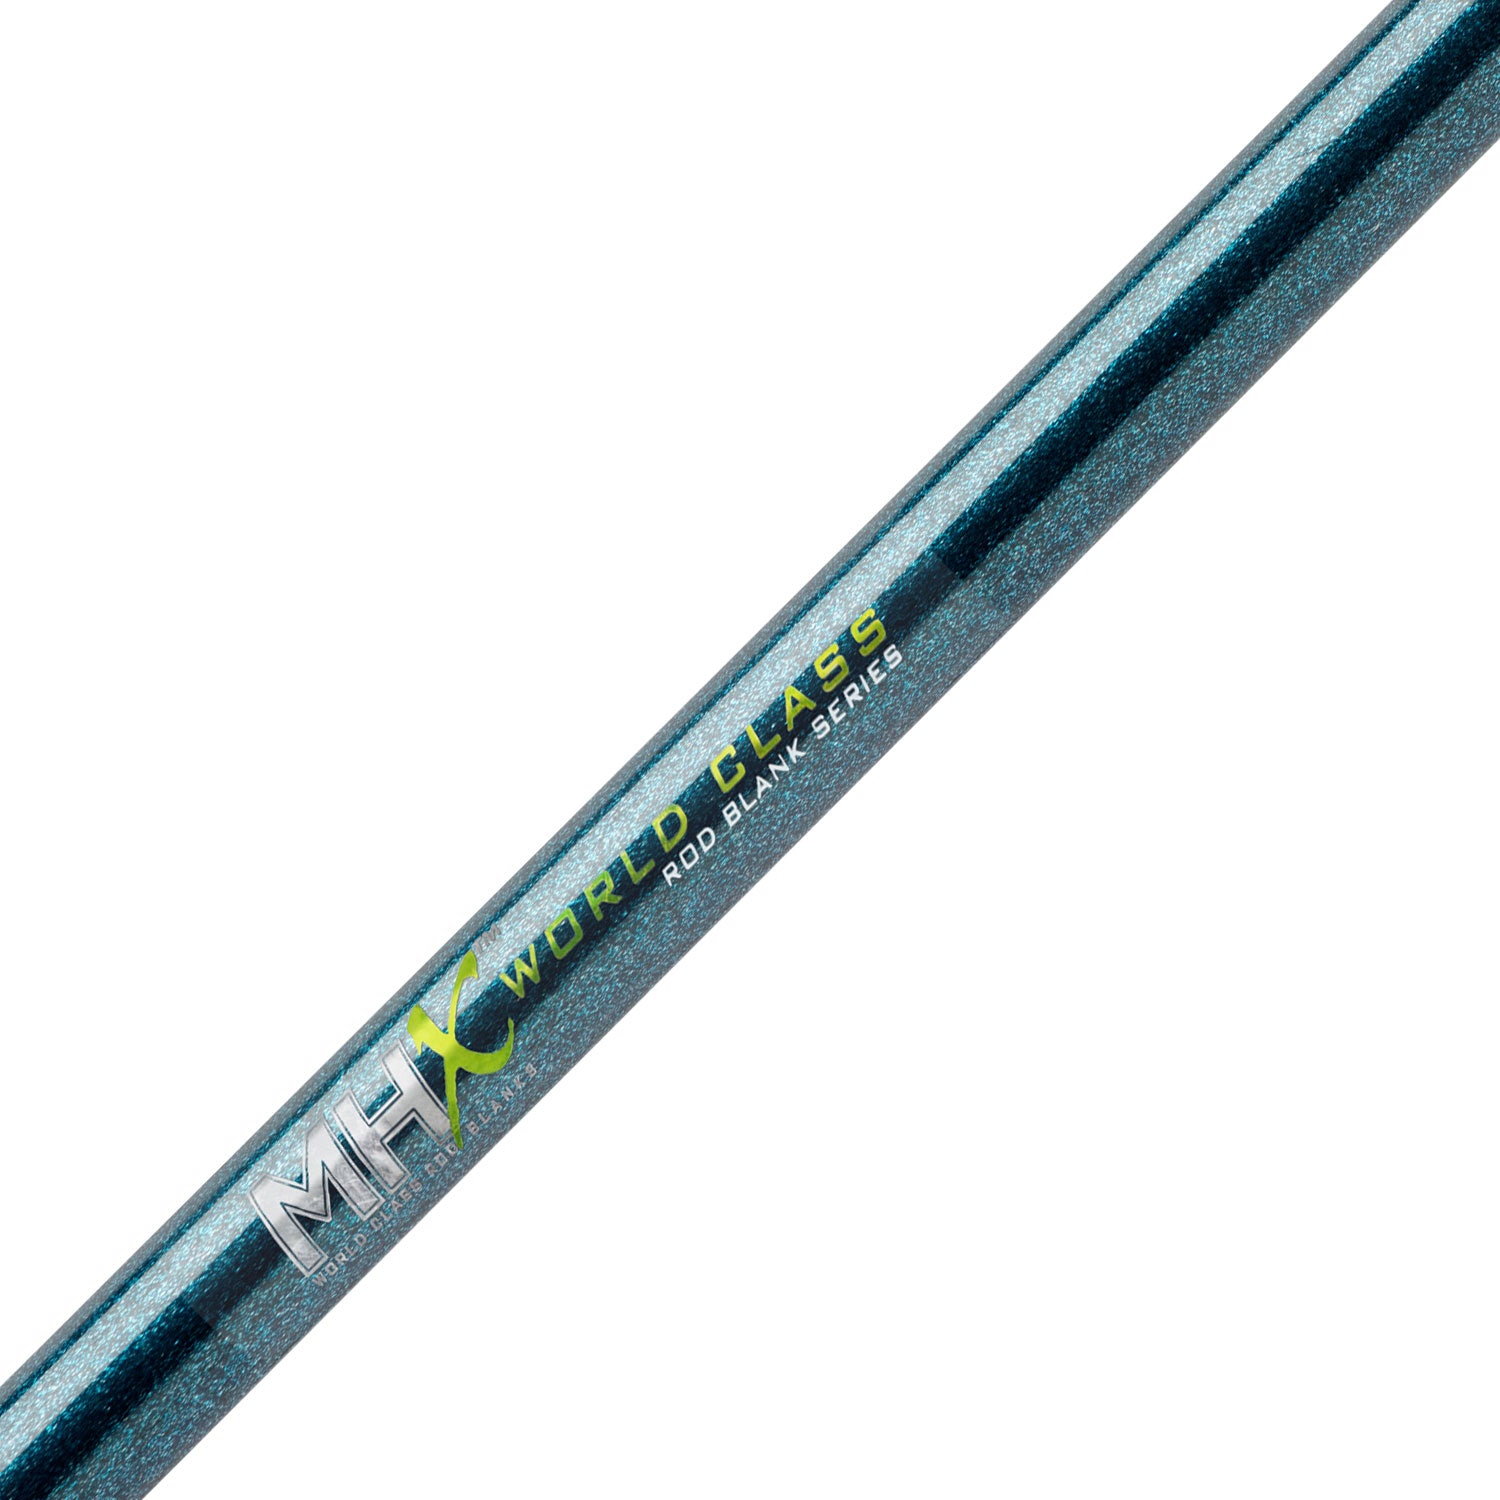 MHX 7'6" Med-Heavy Crankbait Rod Blank - CB905